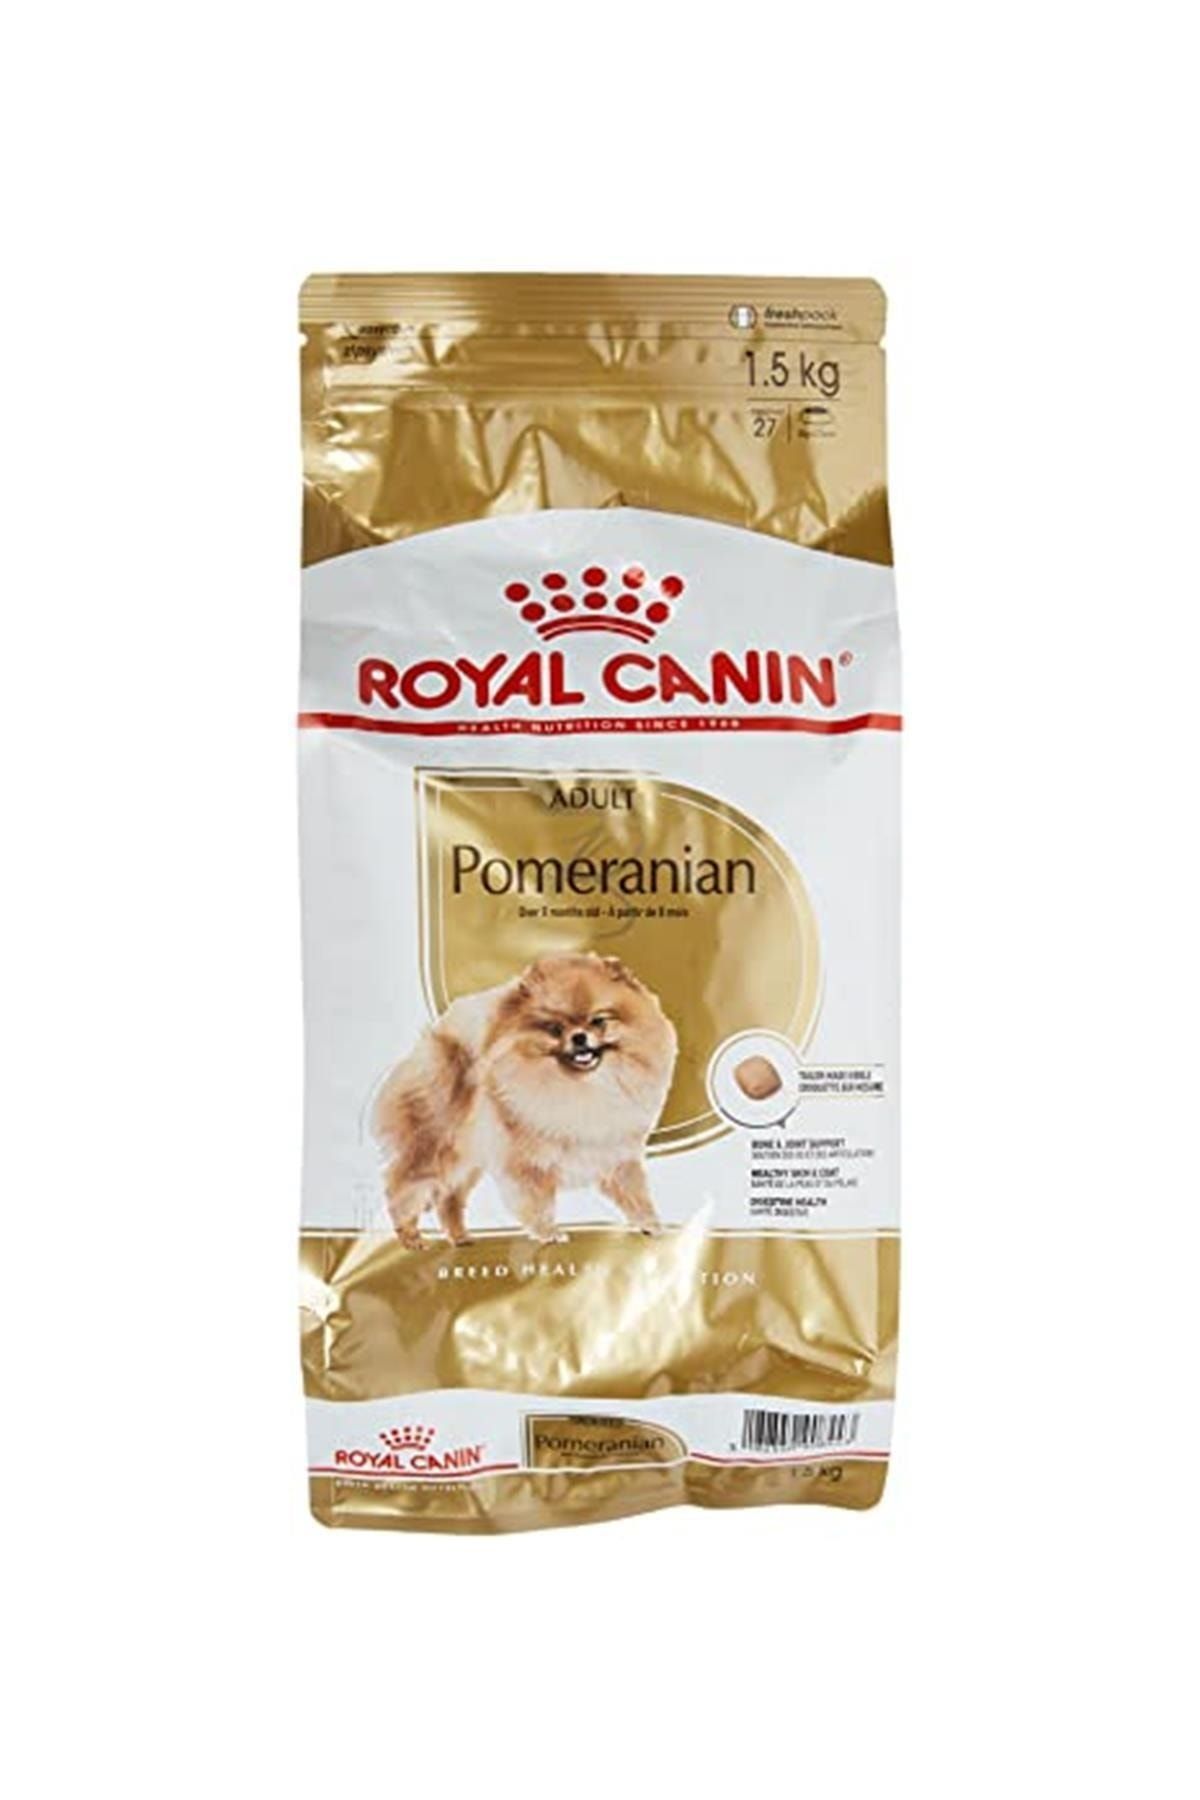 Royal Canin Pomeranian Yetişkin Köpek Maması, 1.5 Kg